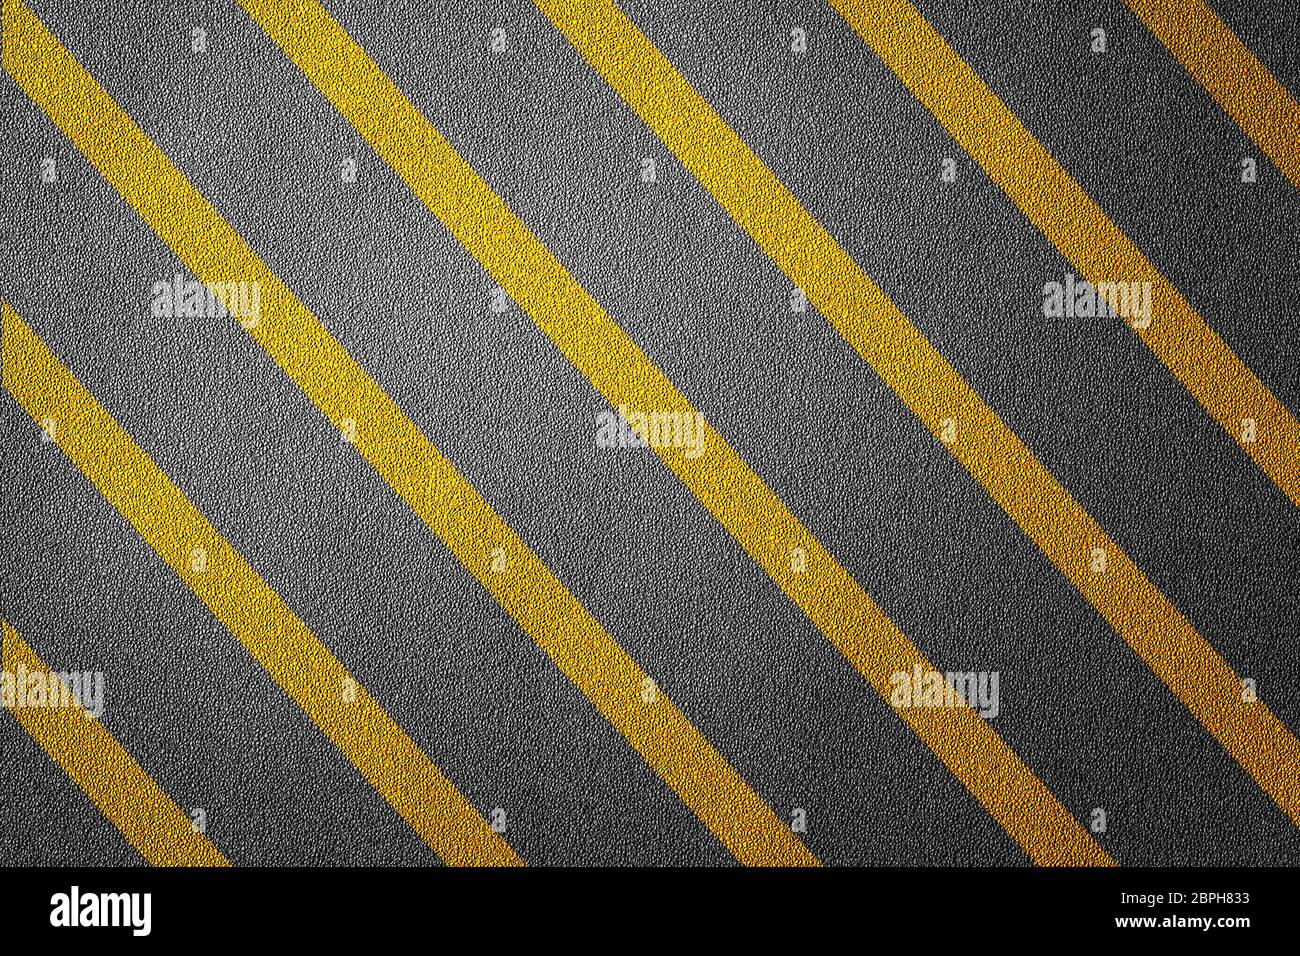 3D Ilustración de una carretera restringida con líneas amarillas patrón y fondo, texturizada reglas de tráfico concepto Foto de stock